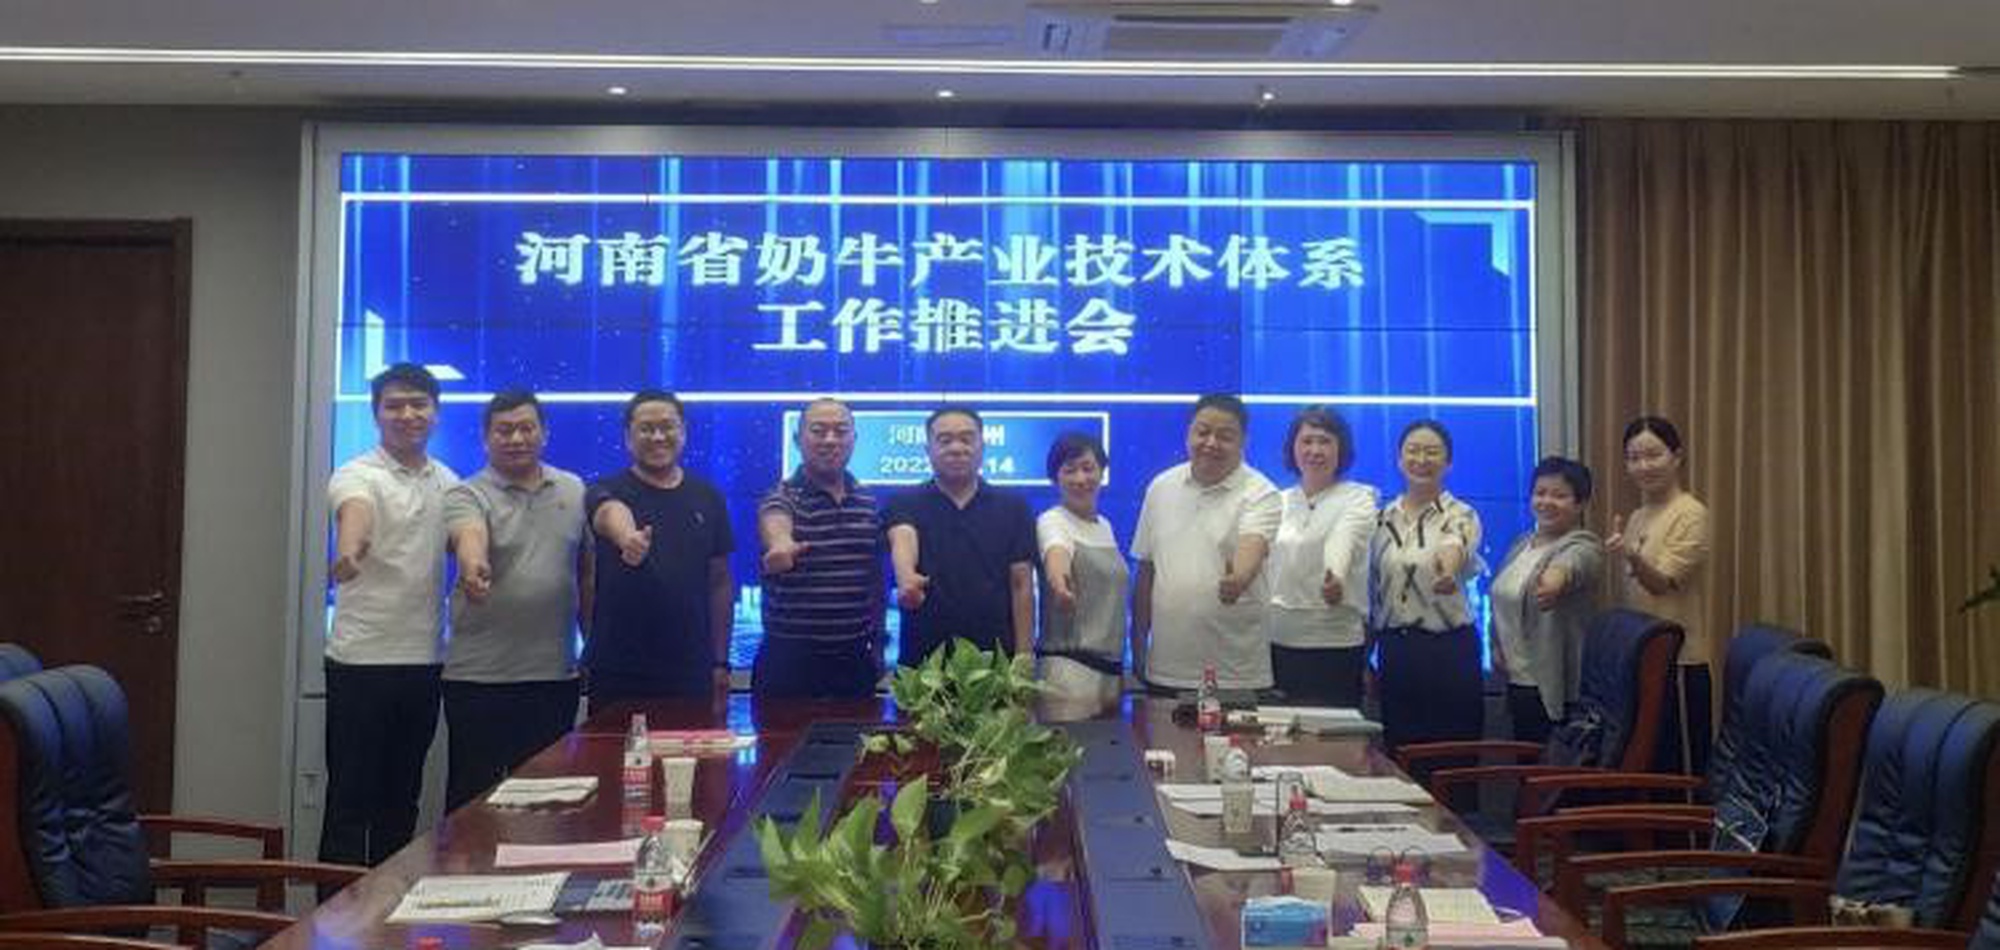 河南省奶牛产业技术体系五年规划研讨会顺利召开 7.14